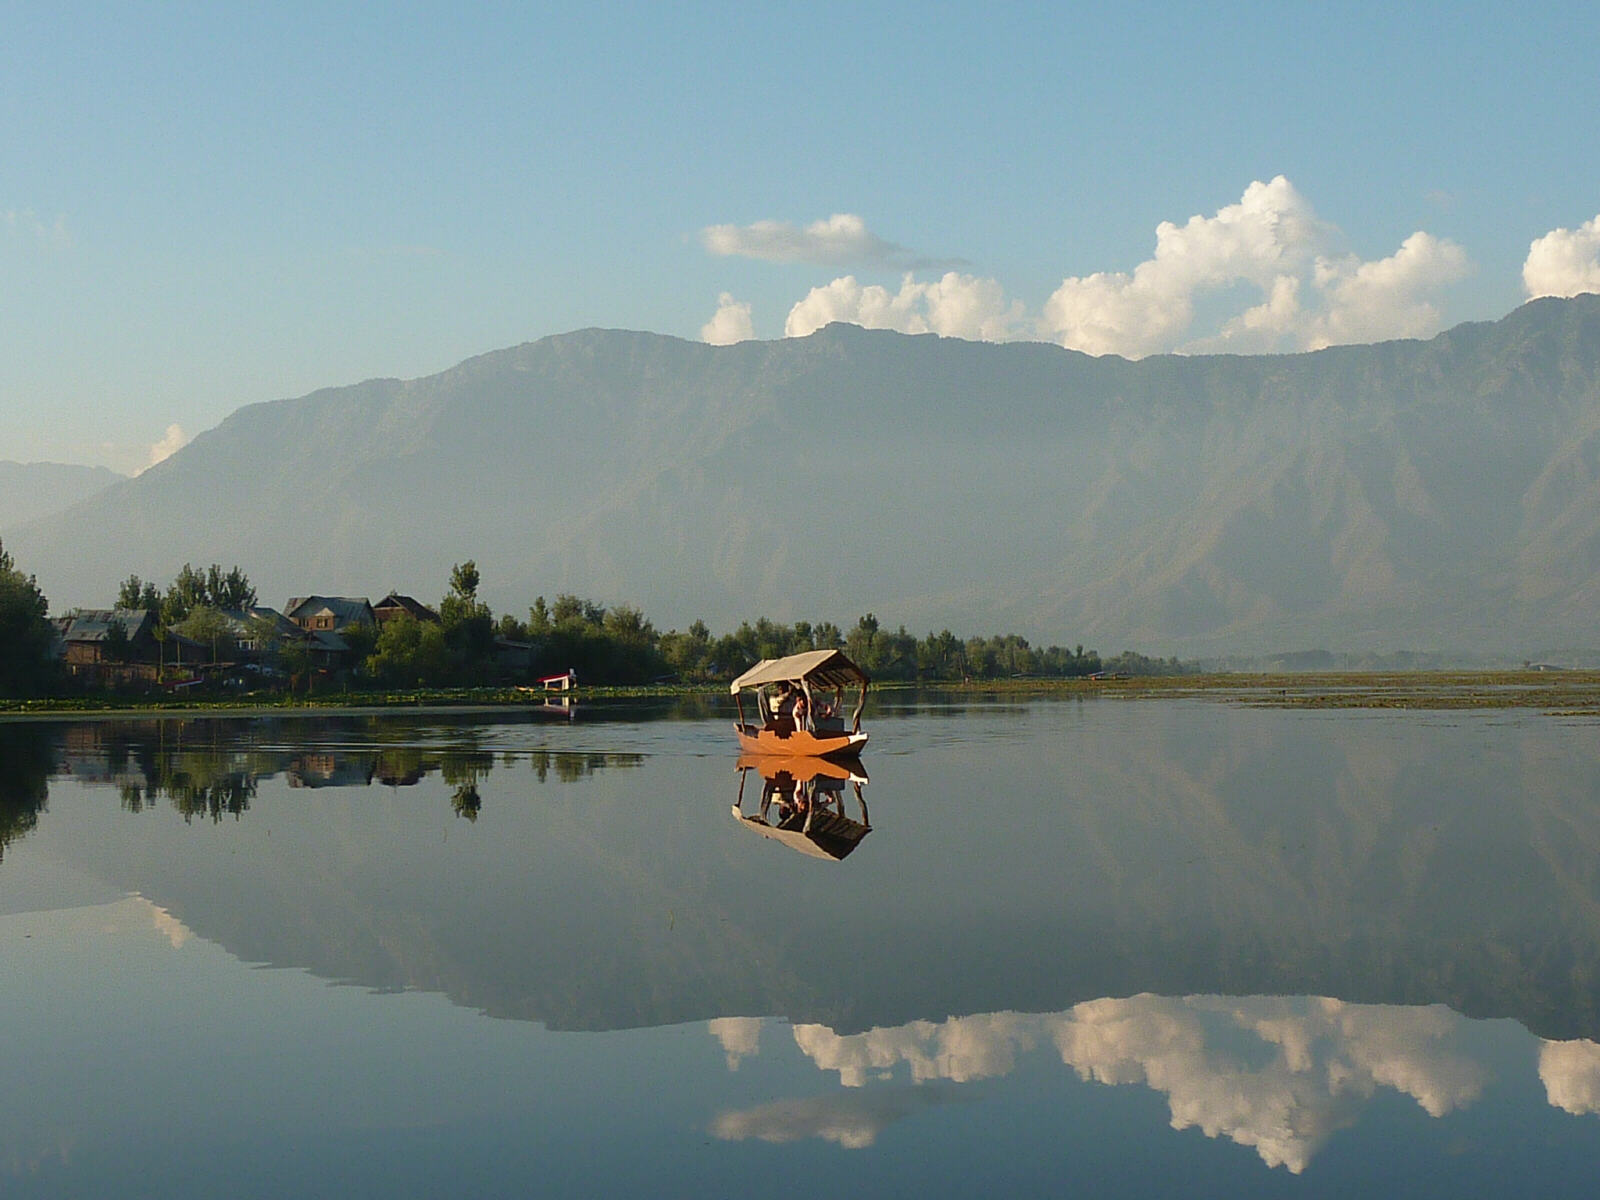 Tranquil Dal lake at Srinagar, Kashmir, India